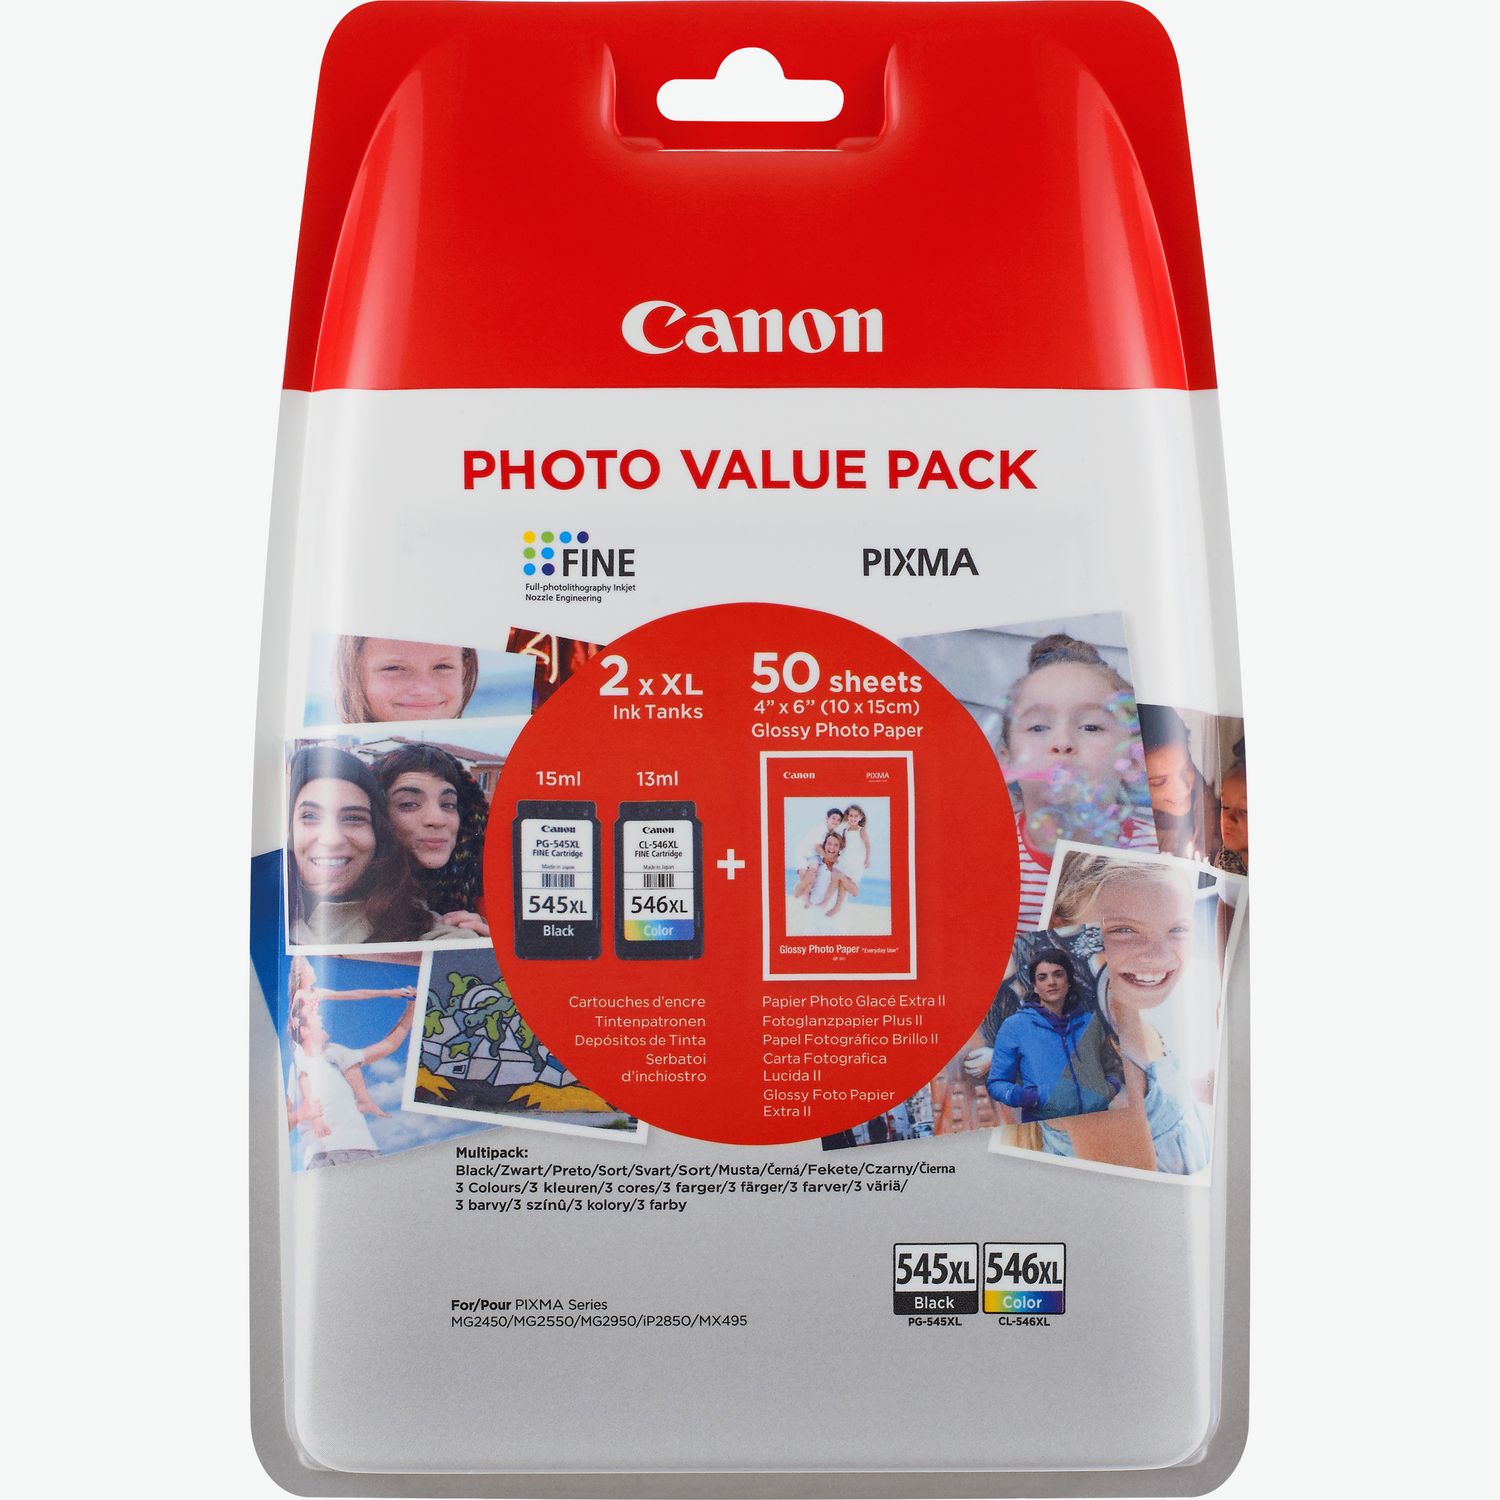 Canon PG-560+CL-561 Photo Cube Noir(e) / Plusieurs couleurs Value